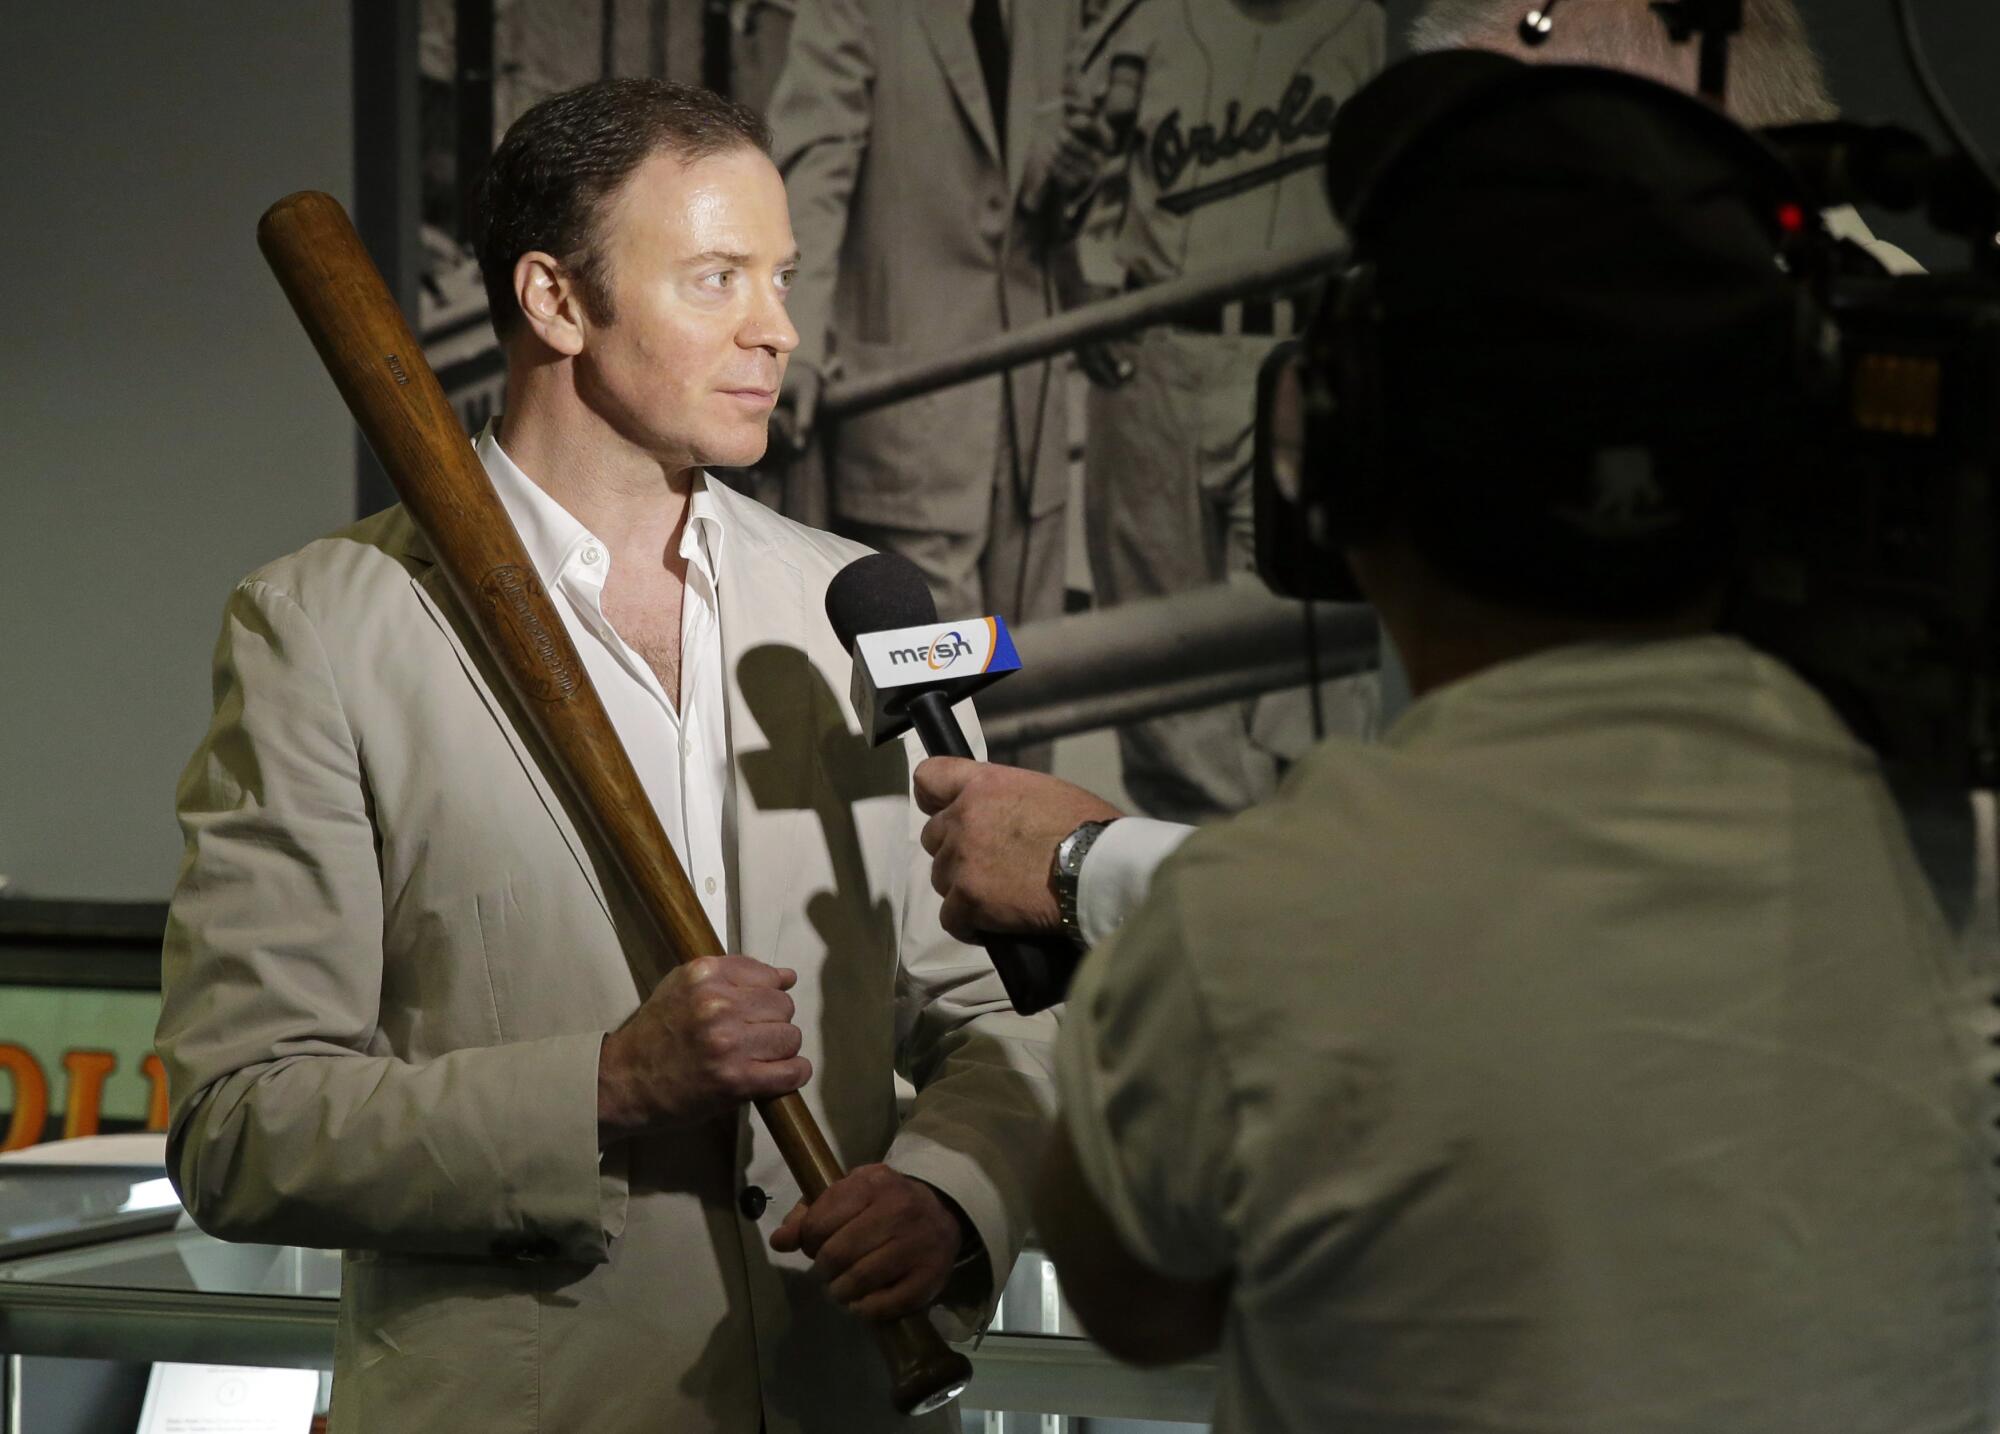 Goldin Auctions founder Ken Goldin holds a baseball bat